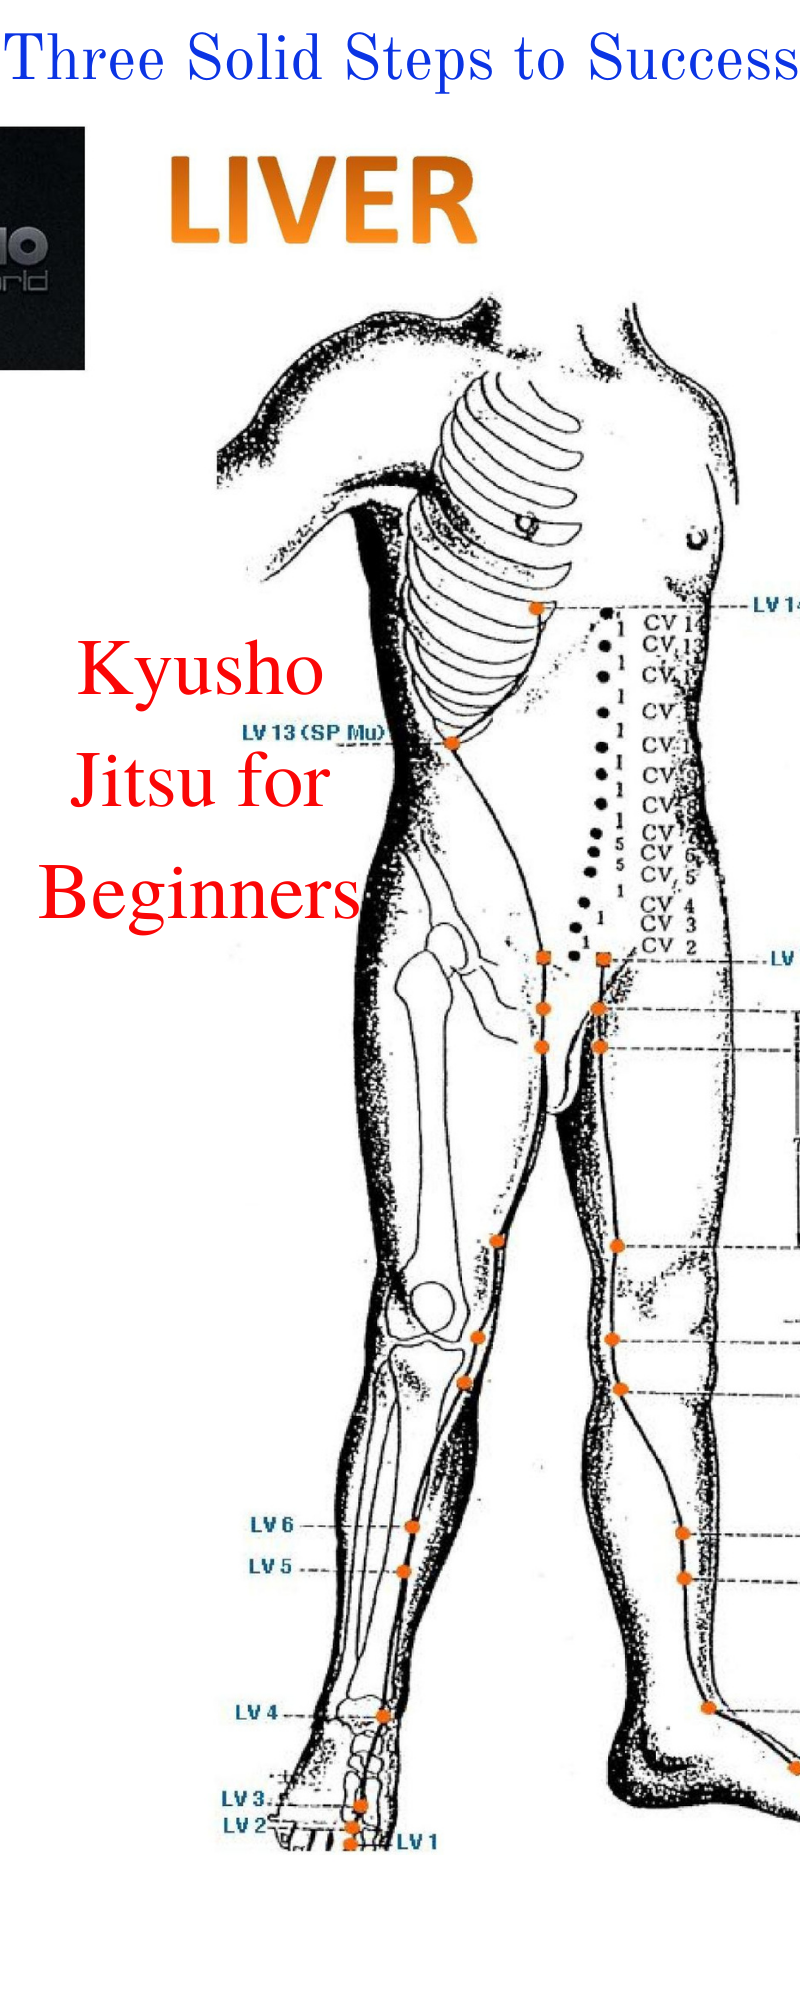 * Kyusho Jitsu for Beginners